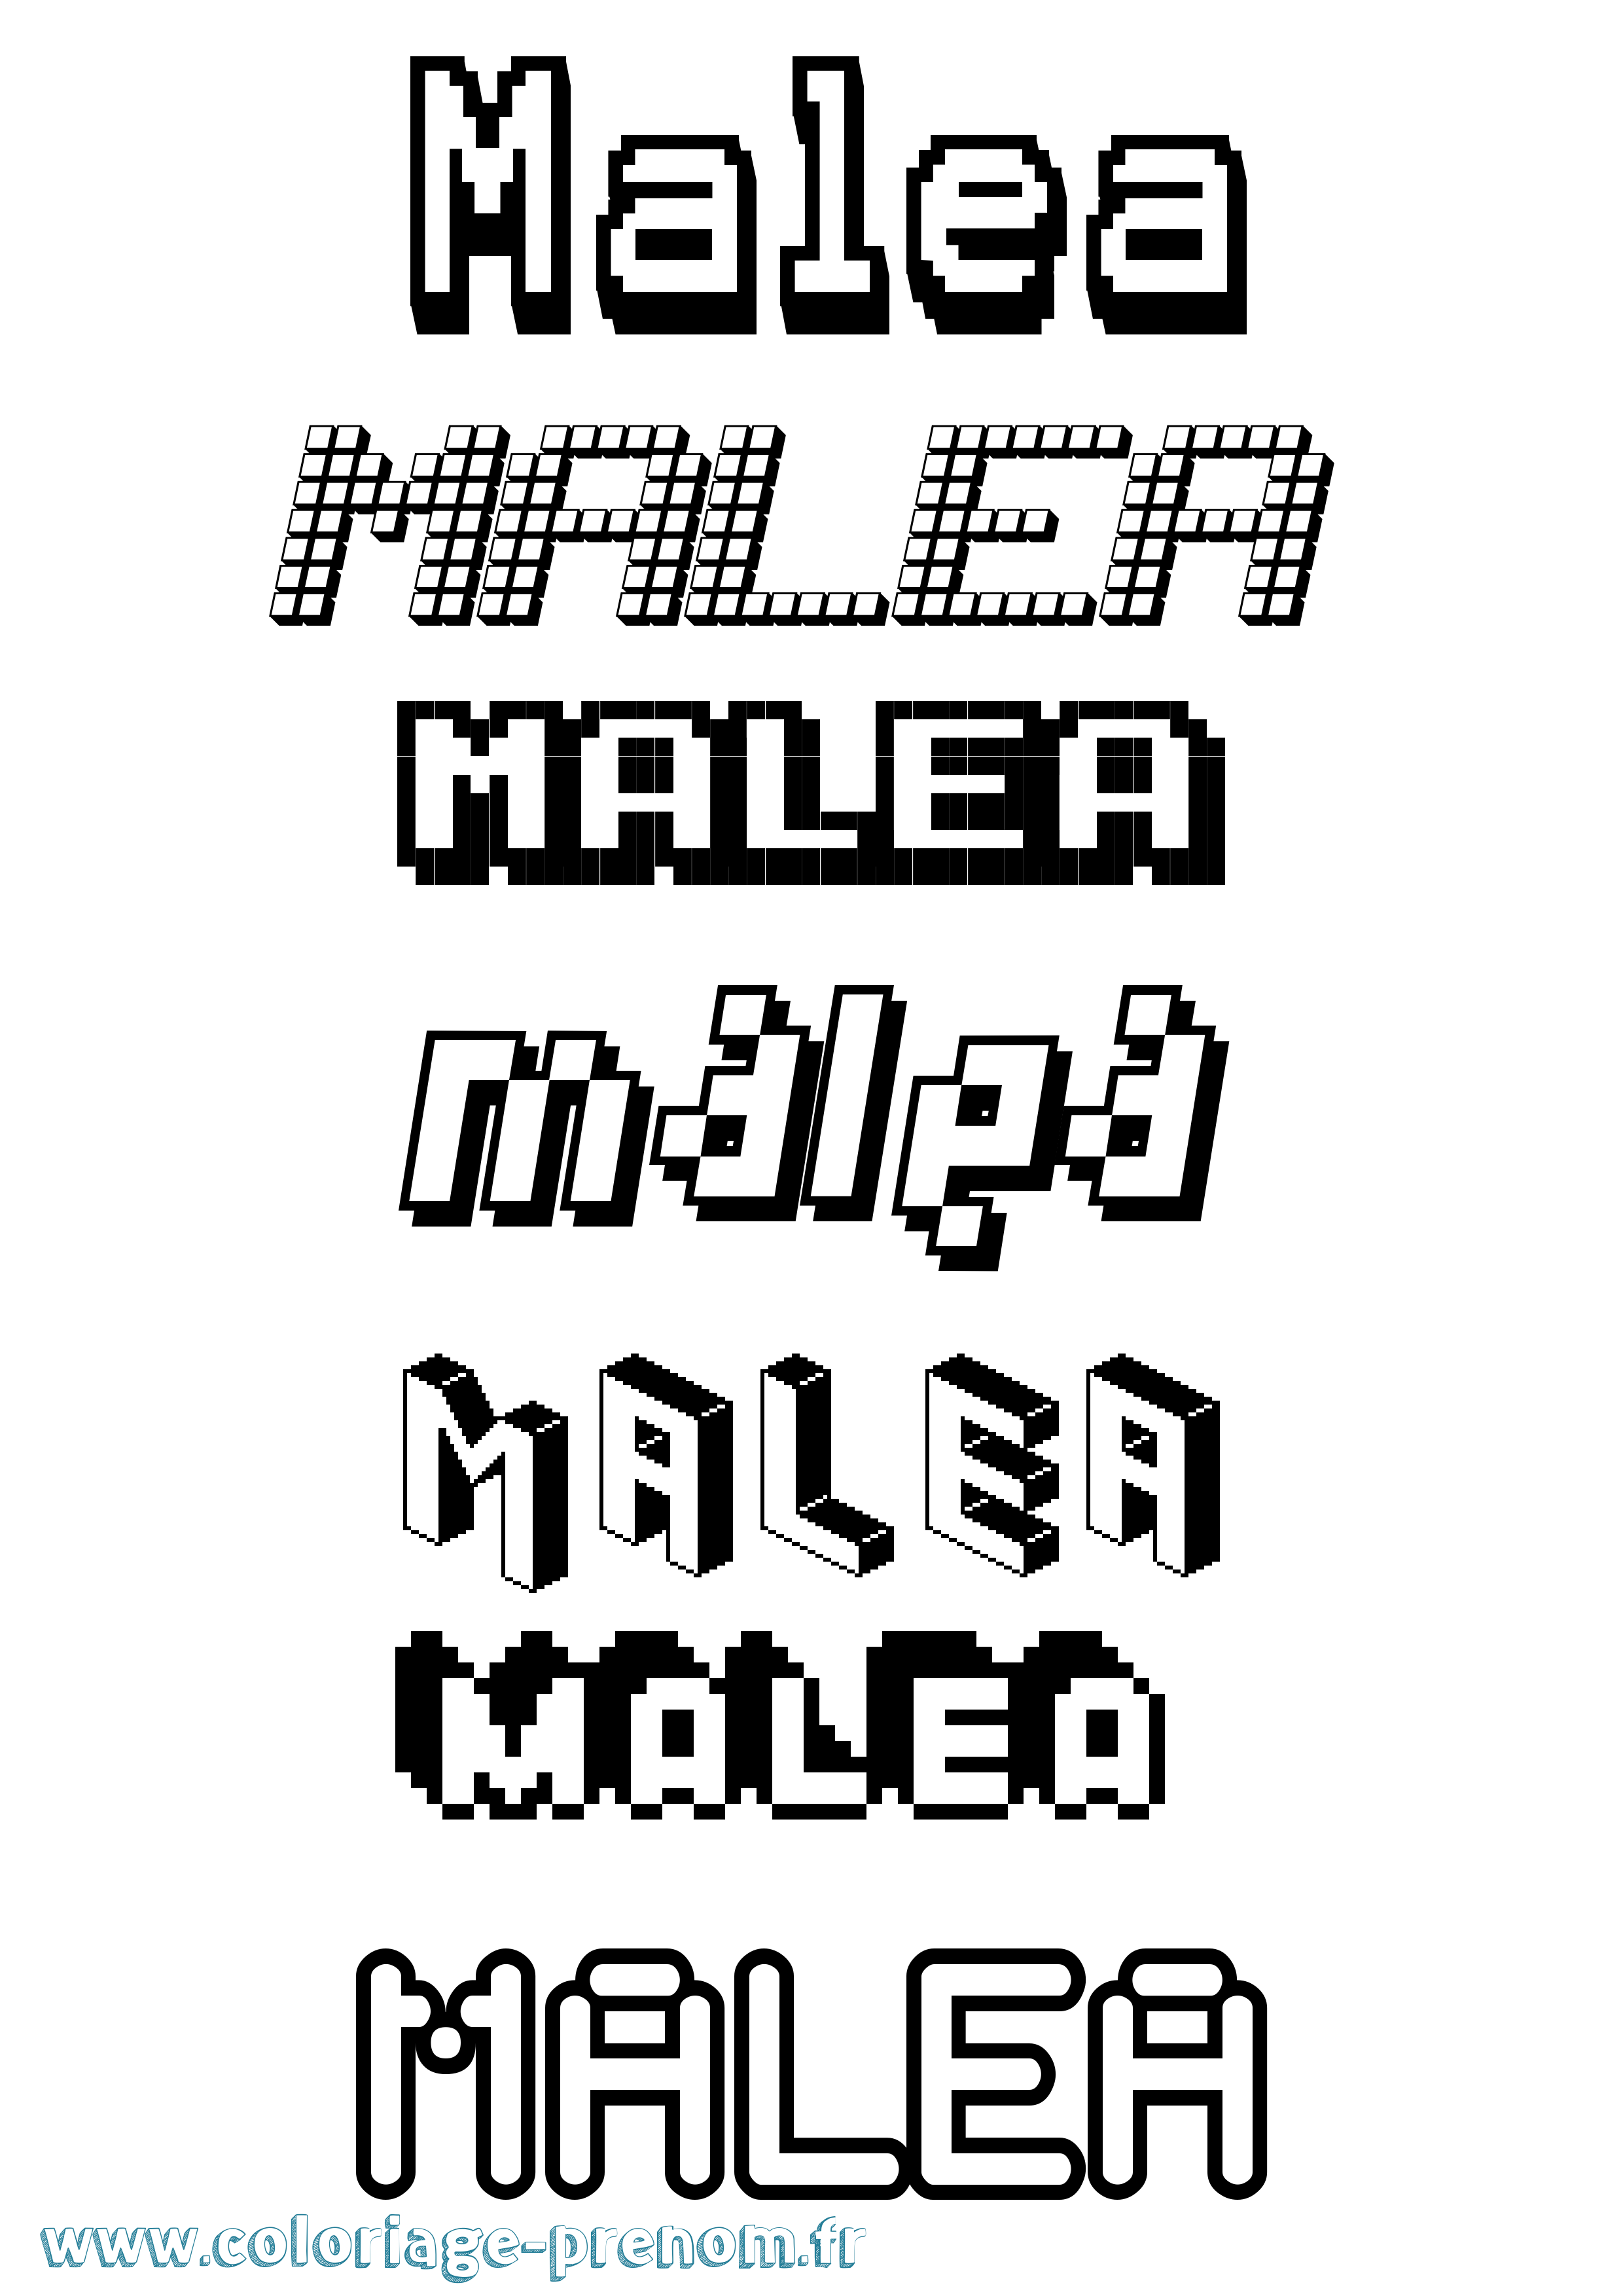 Coloriage prénom Malea Pixel